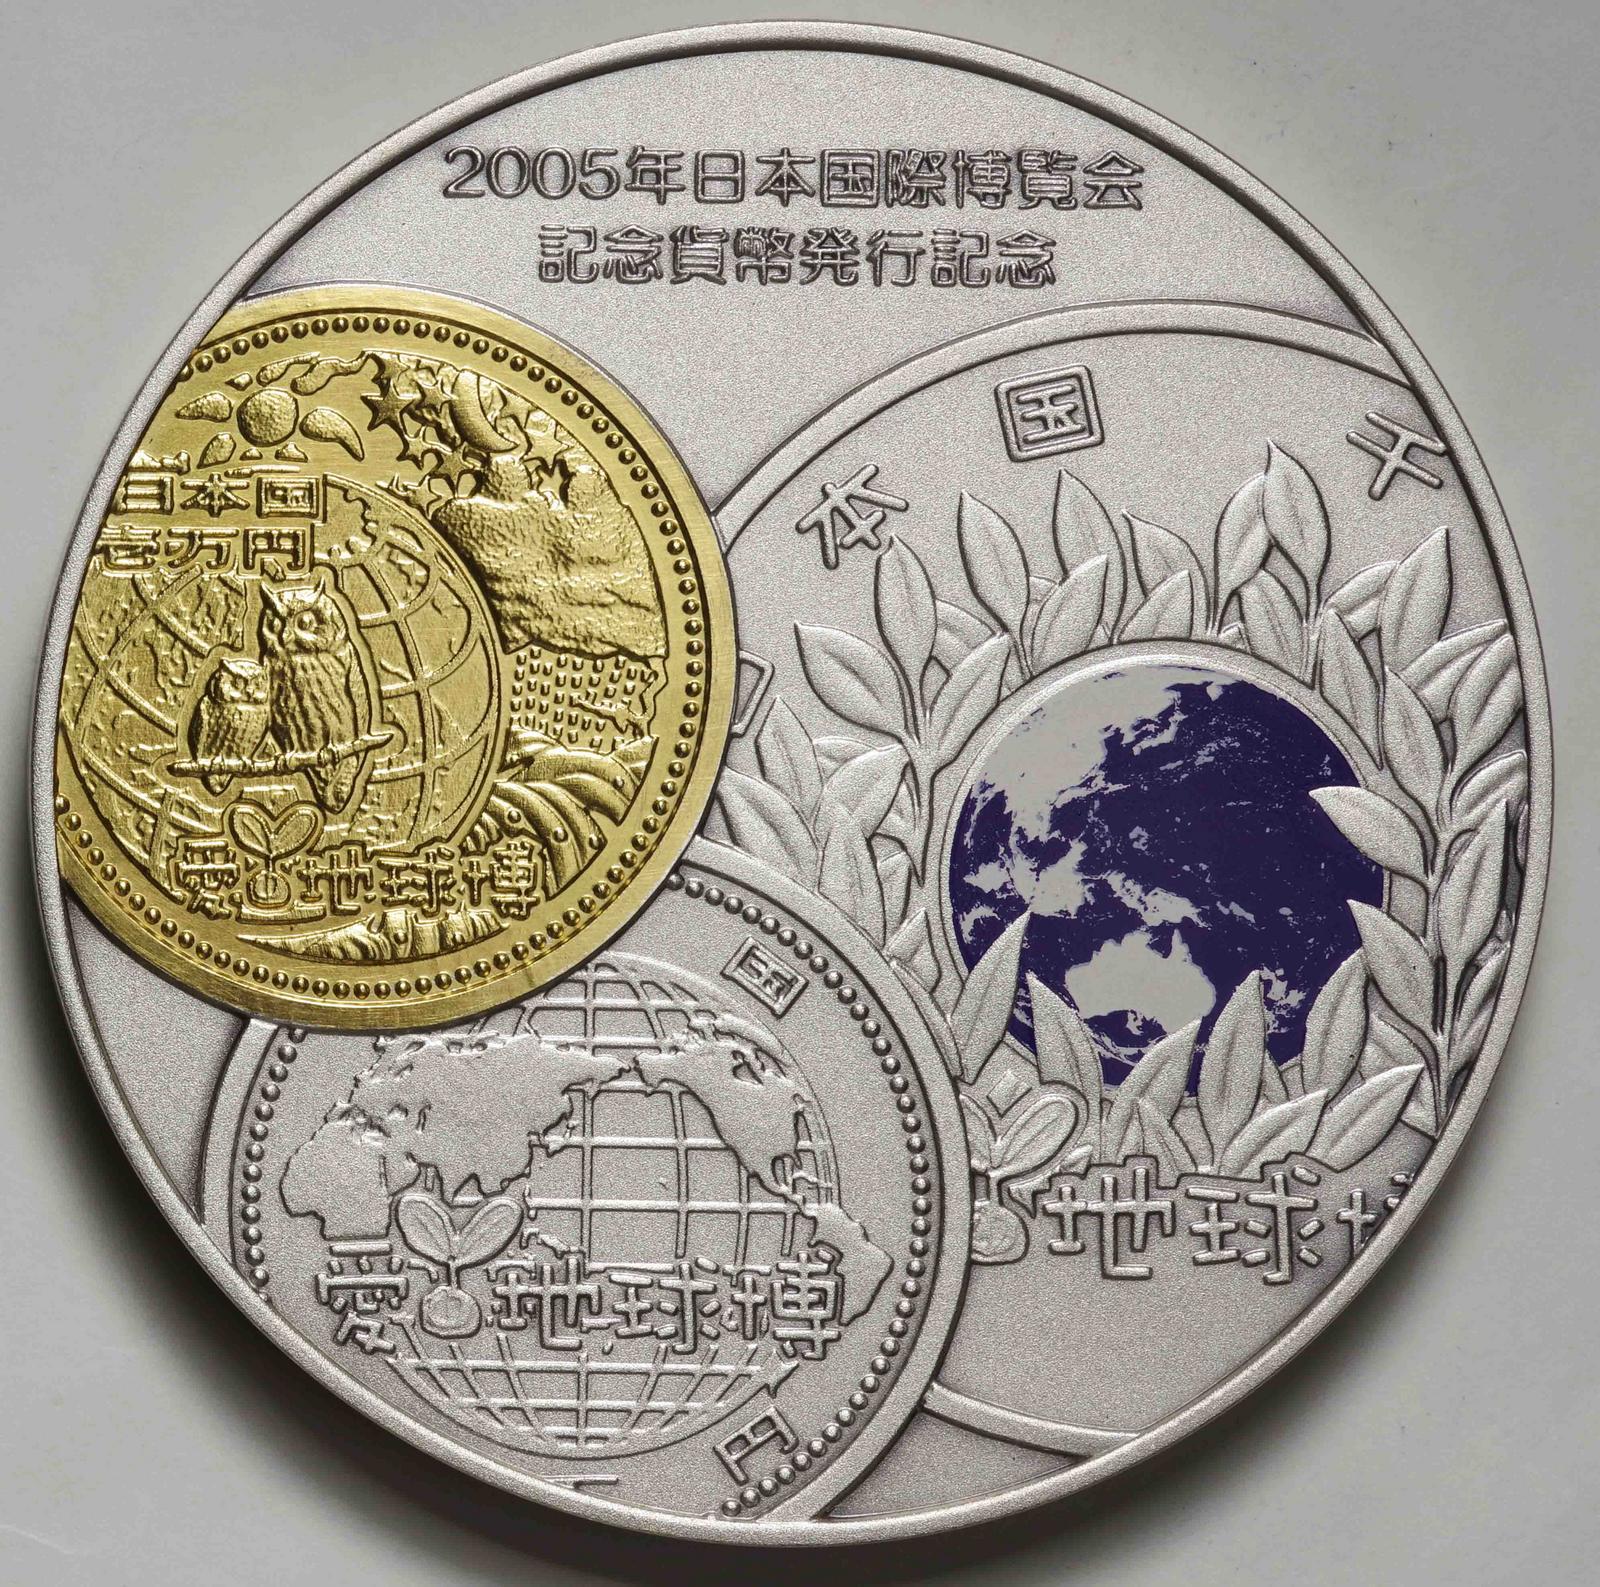 日本-Japan. 2005年日本国際博覧会記念貨幣発行記念純銀カラーメダル ...